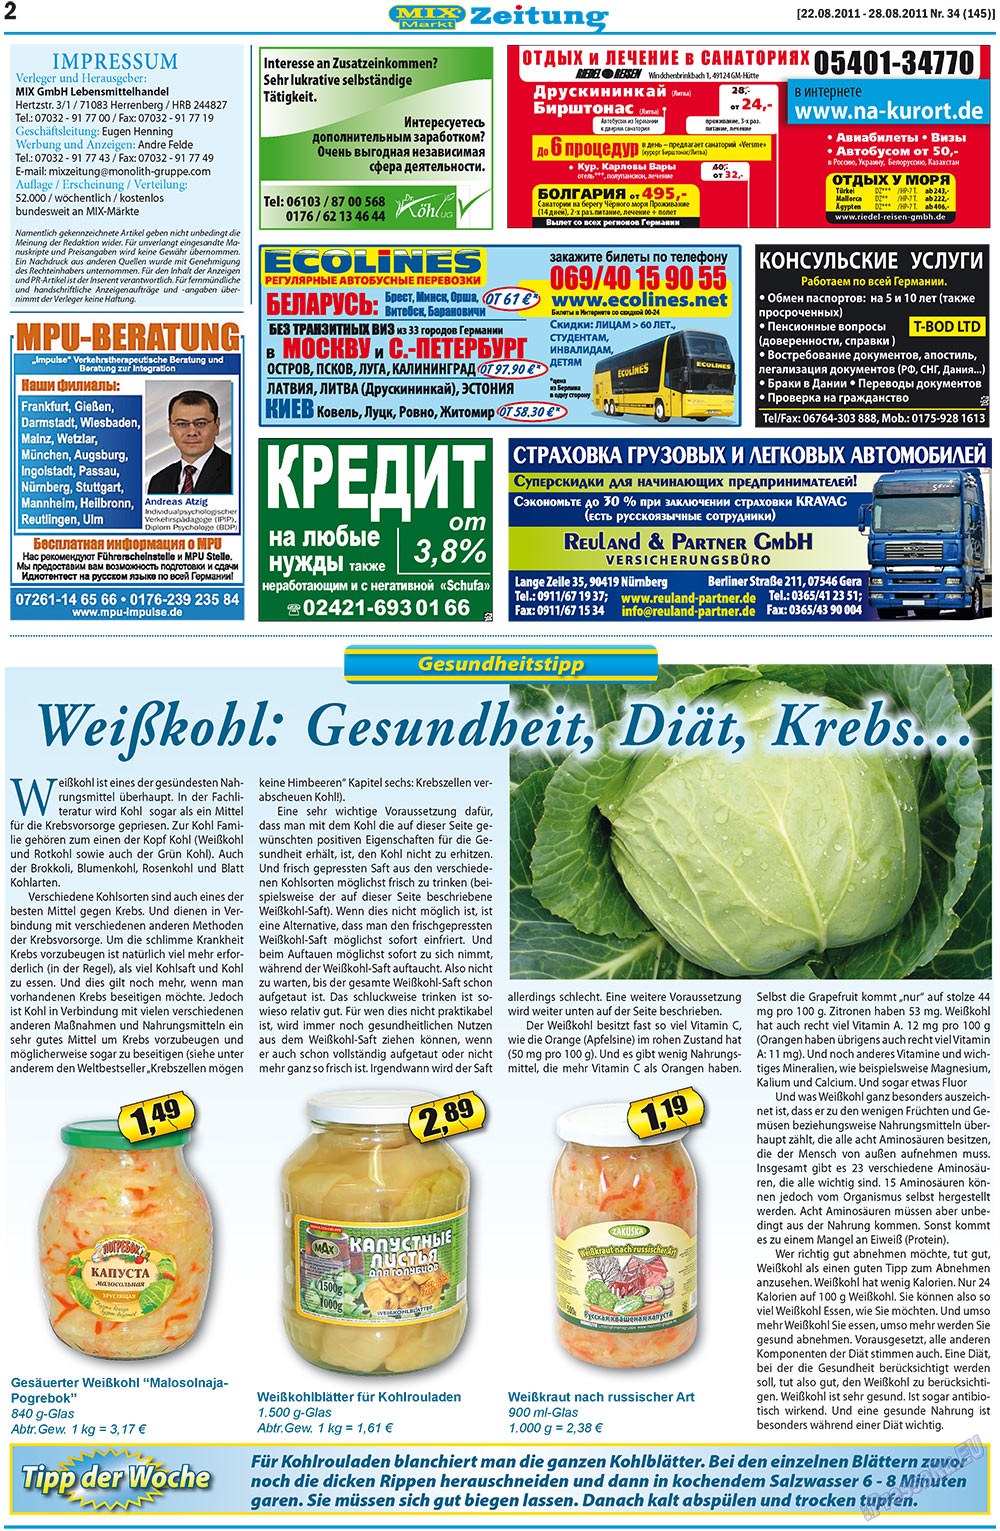 MIX-Markt Zeitung (Zeitung). 2011 Jahr, Ausgabe 34, Seite 2